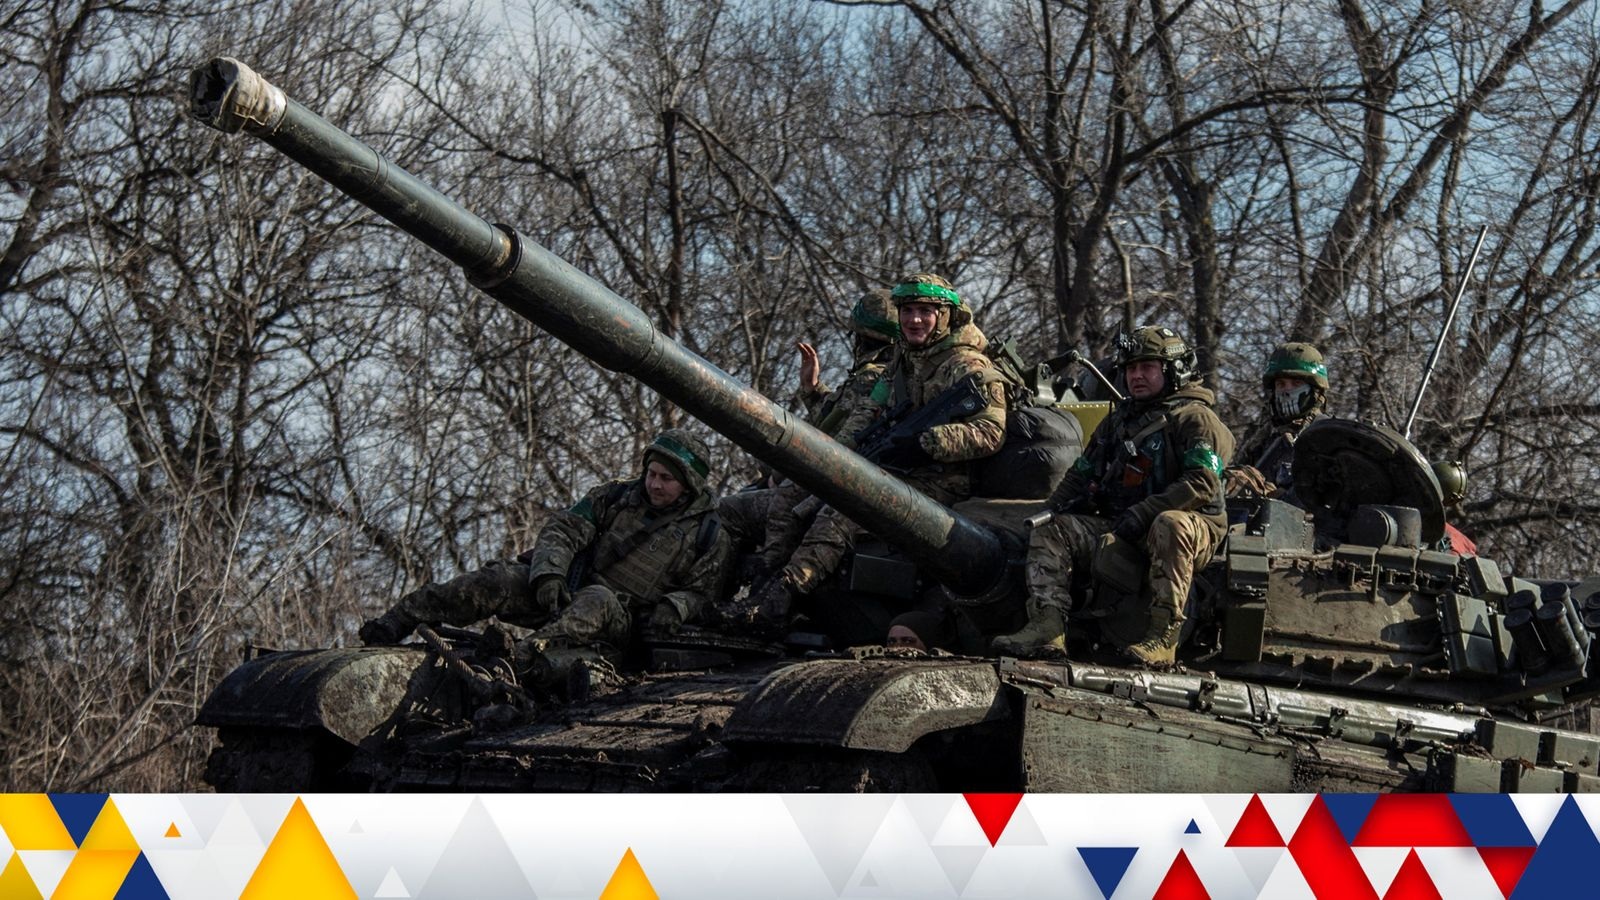 Các binh sĩ Ukraine ngồi trên một chiếc xe tăng ở gần thành phố Bakhmut (Ảnh minh họa: Skynews).